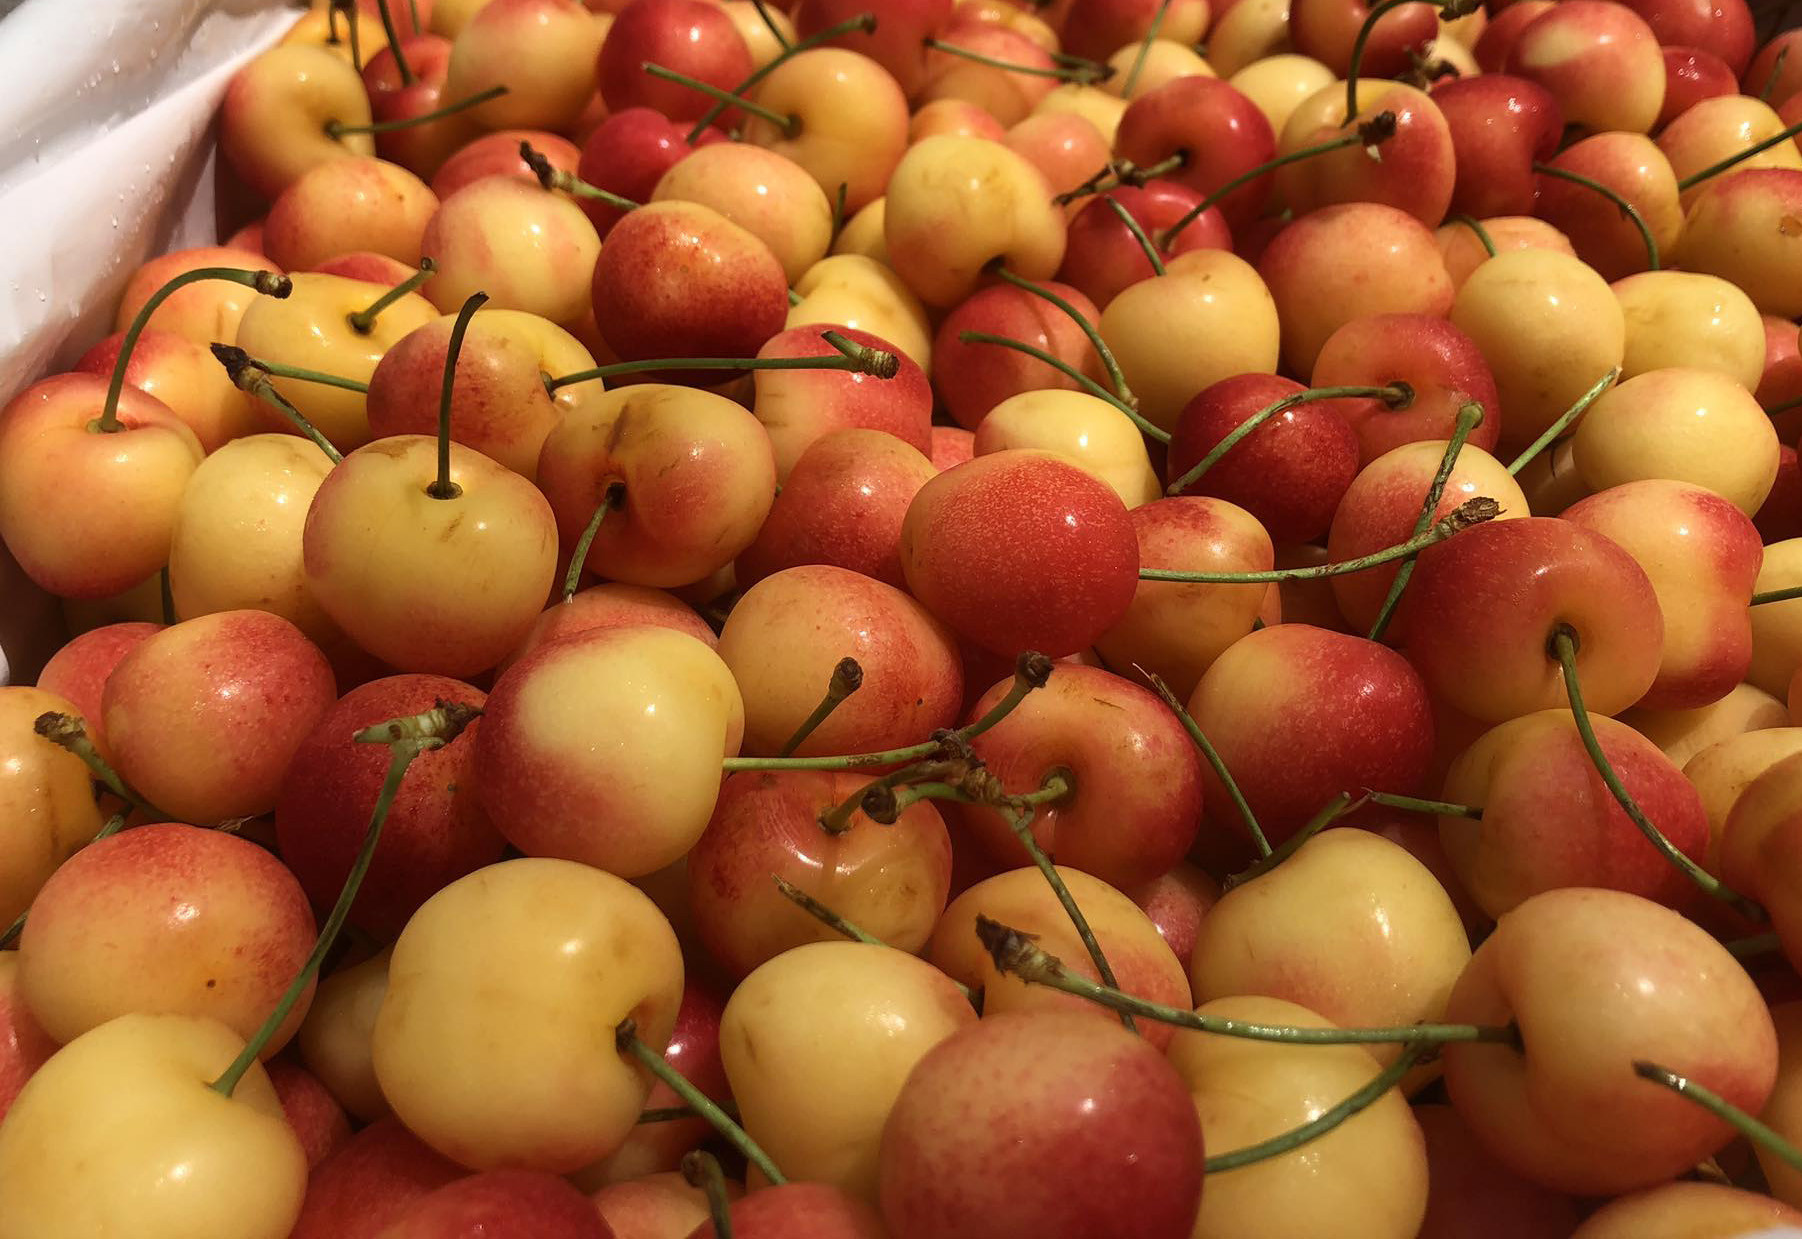 Cherry nhập khẩu bán đầy chợ Việt, hàng Mỹ giá rẻ chưa từng có-3